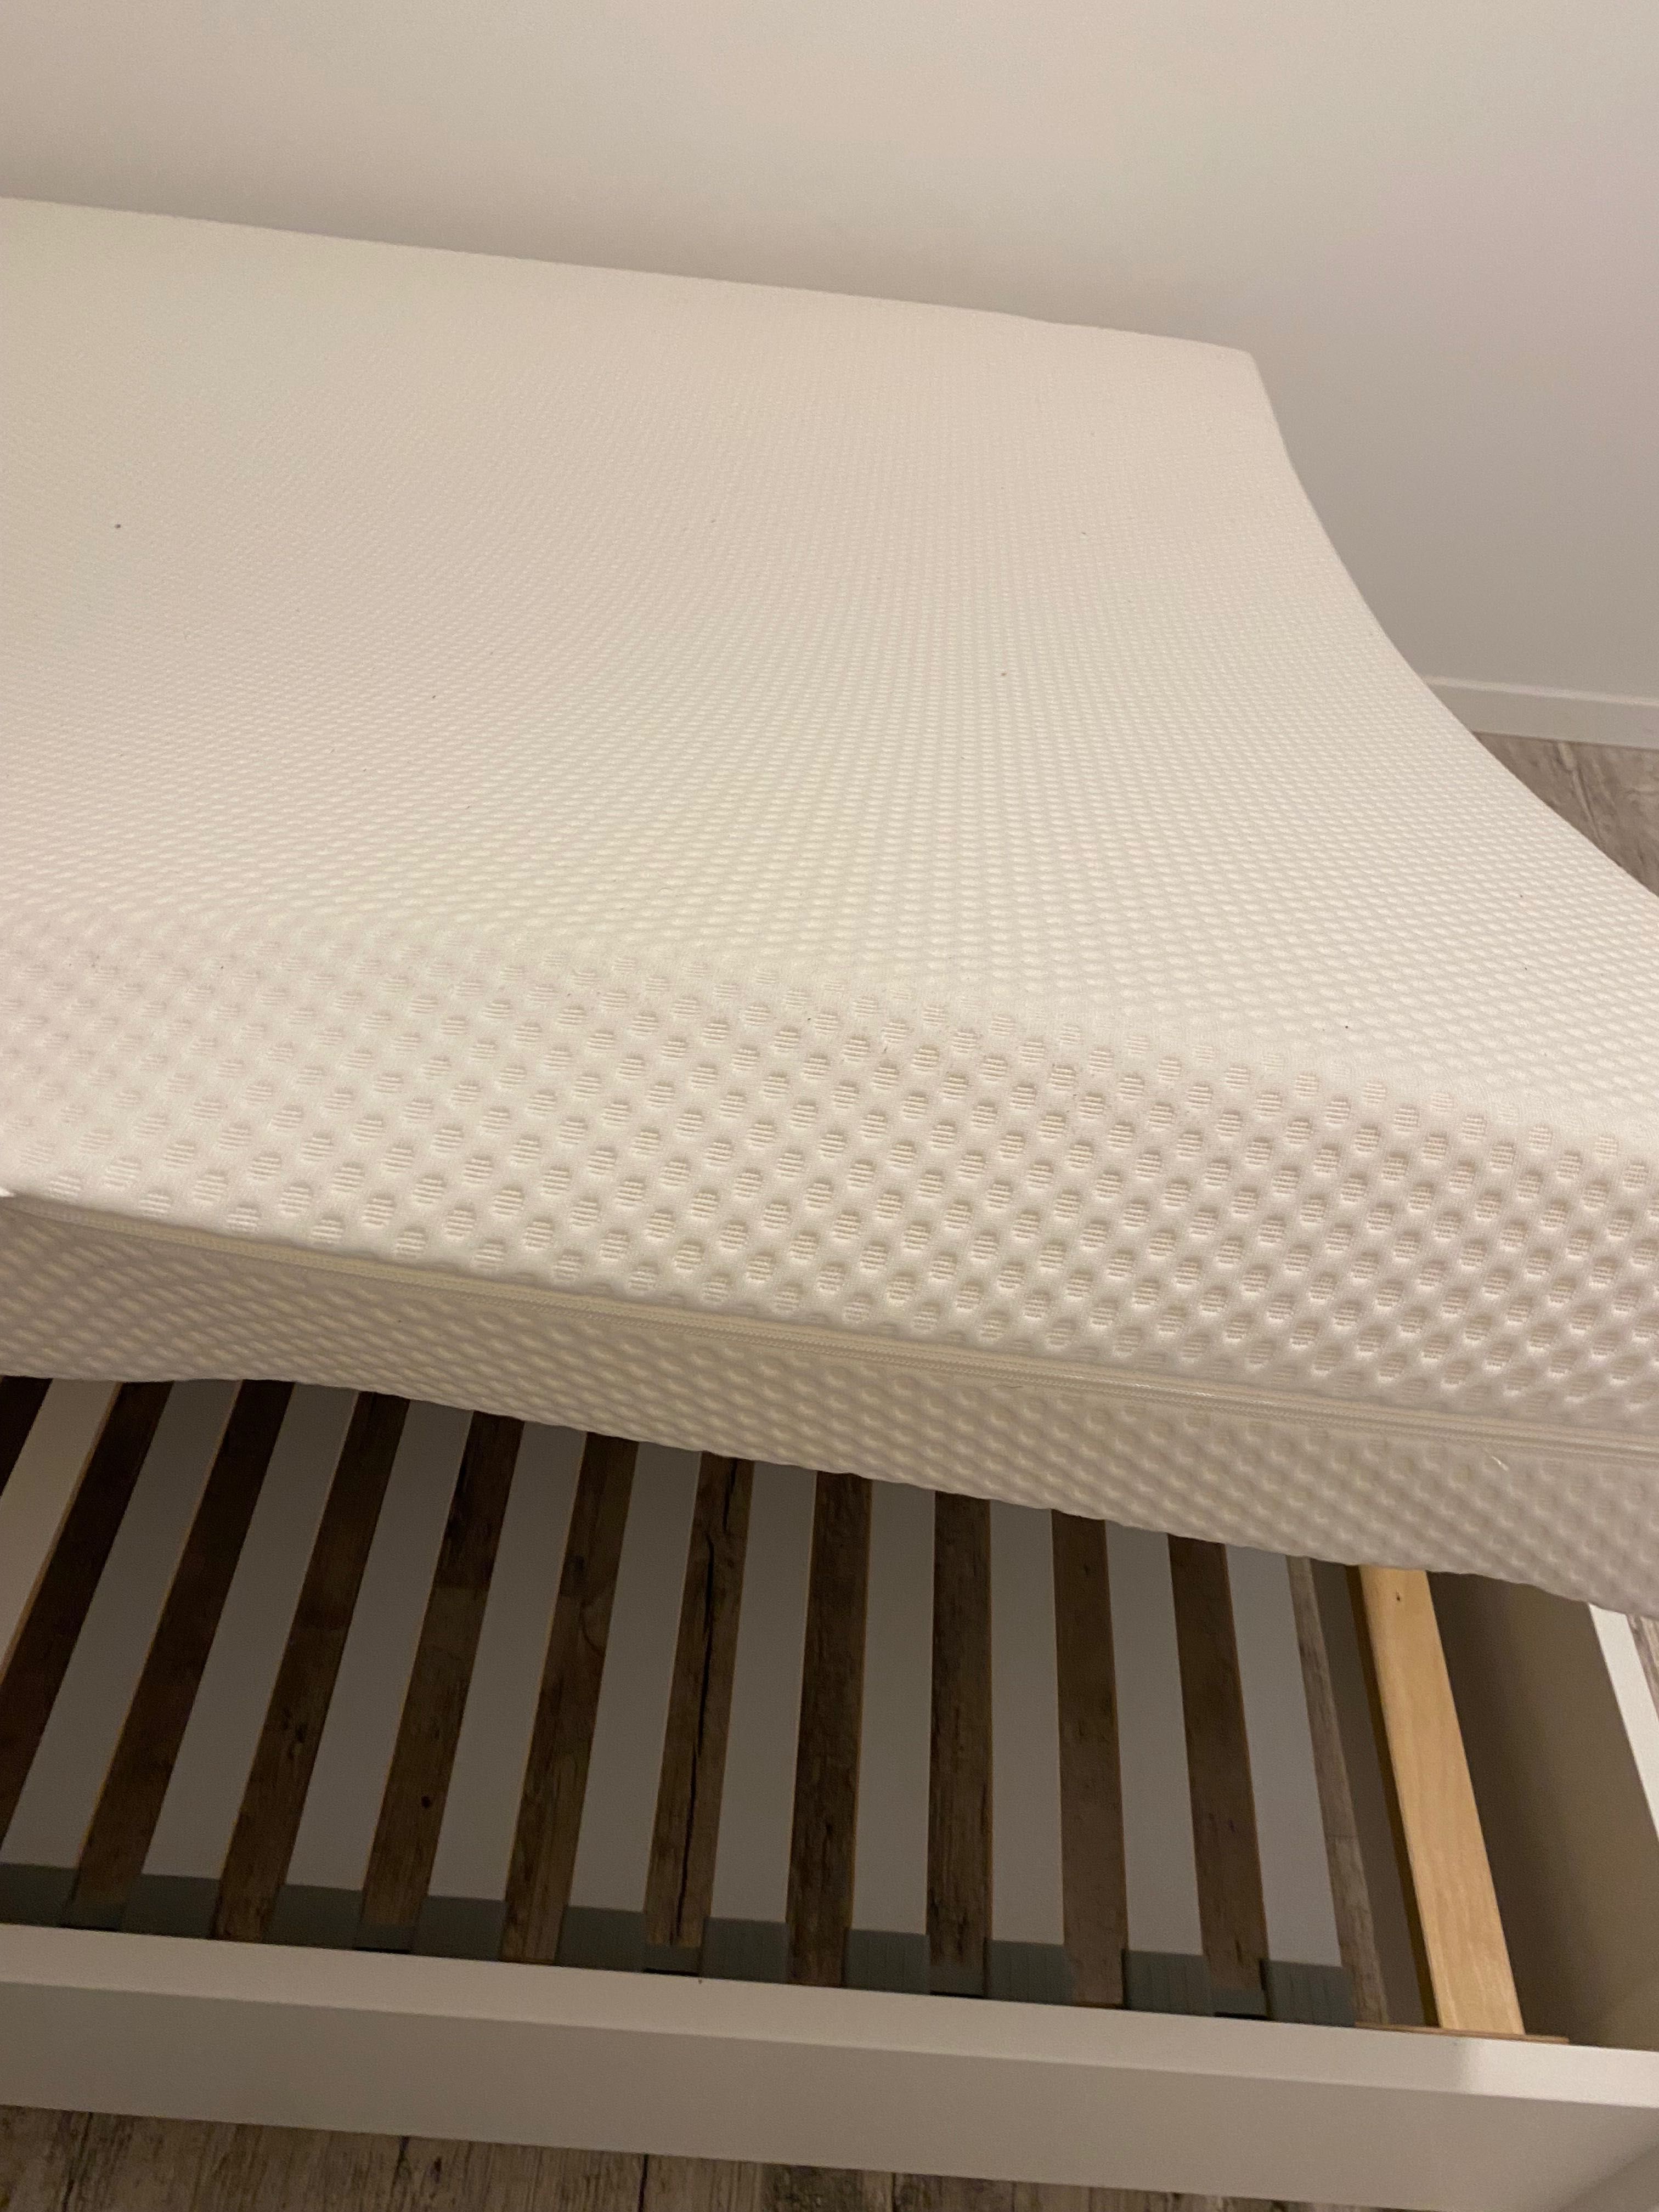 Łóżko IKEA z materacem